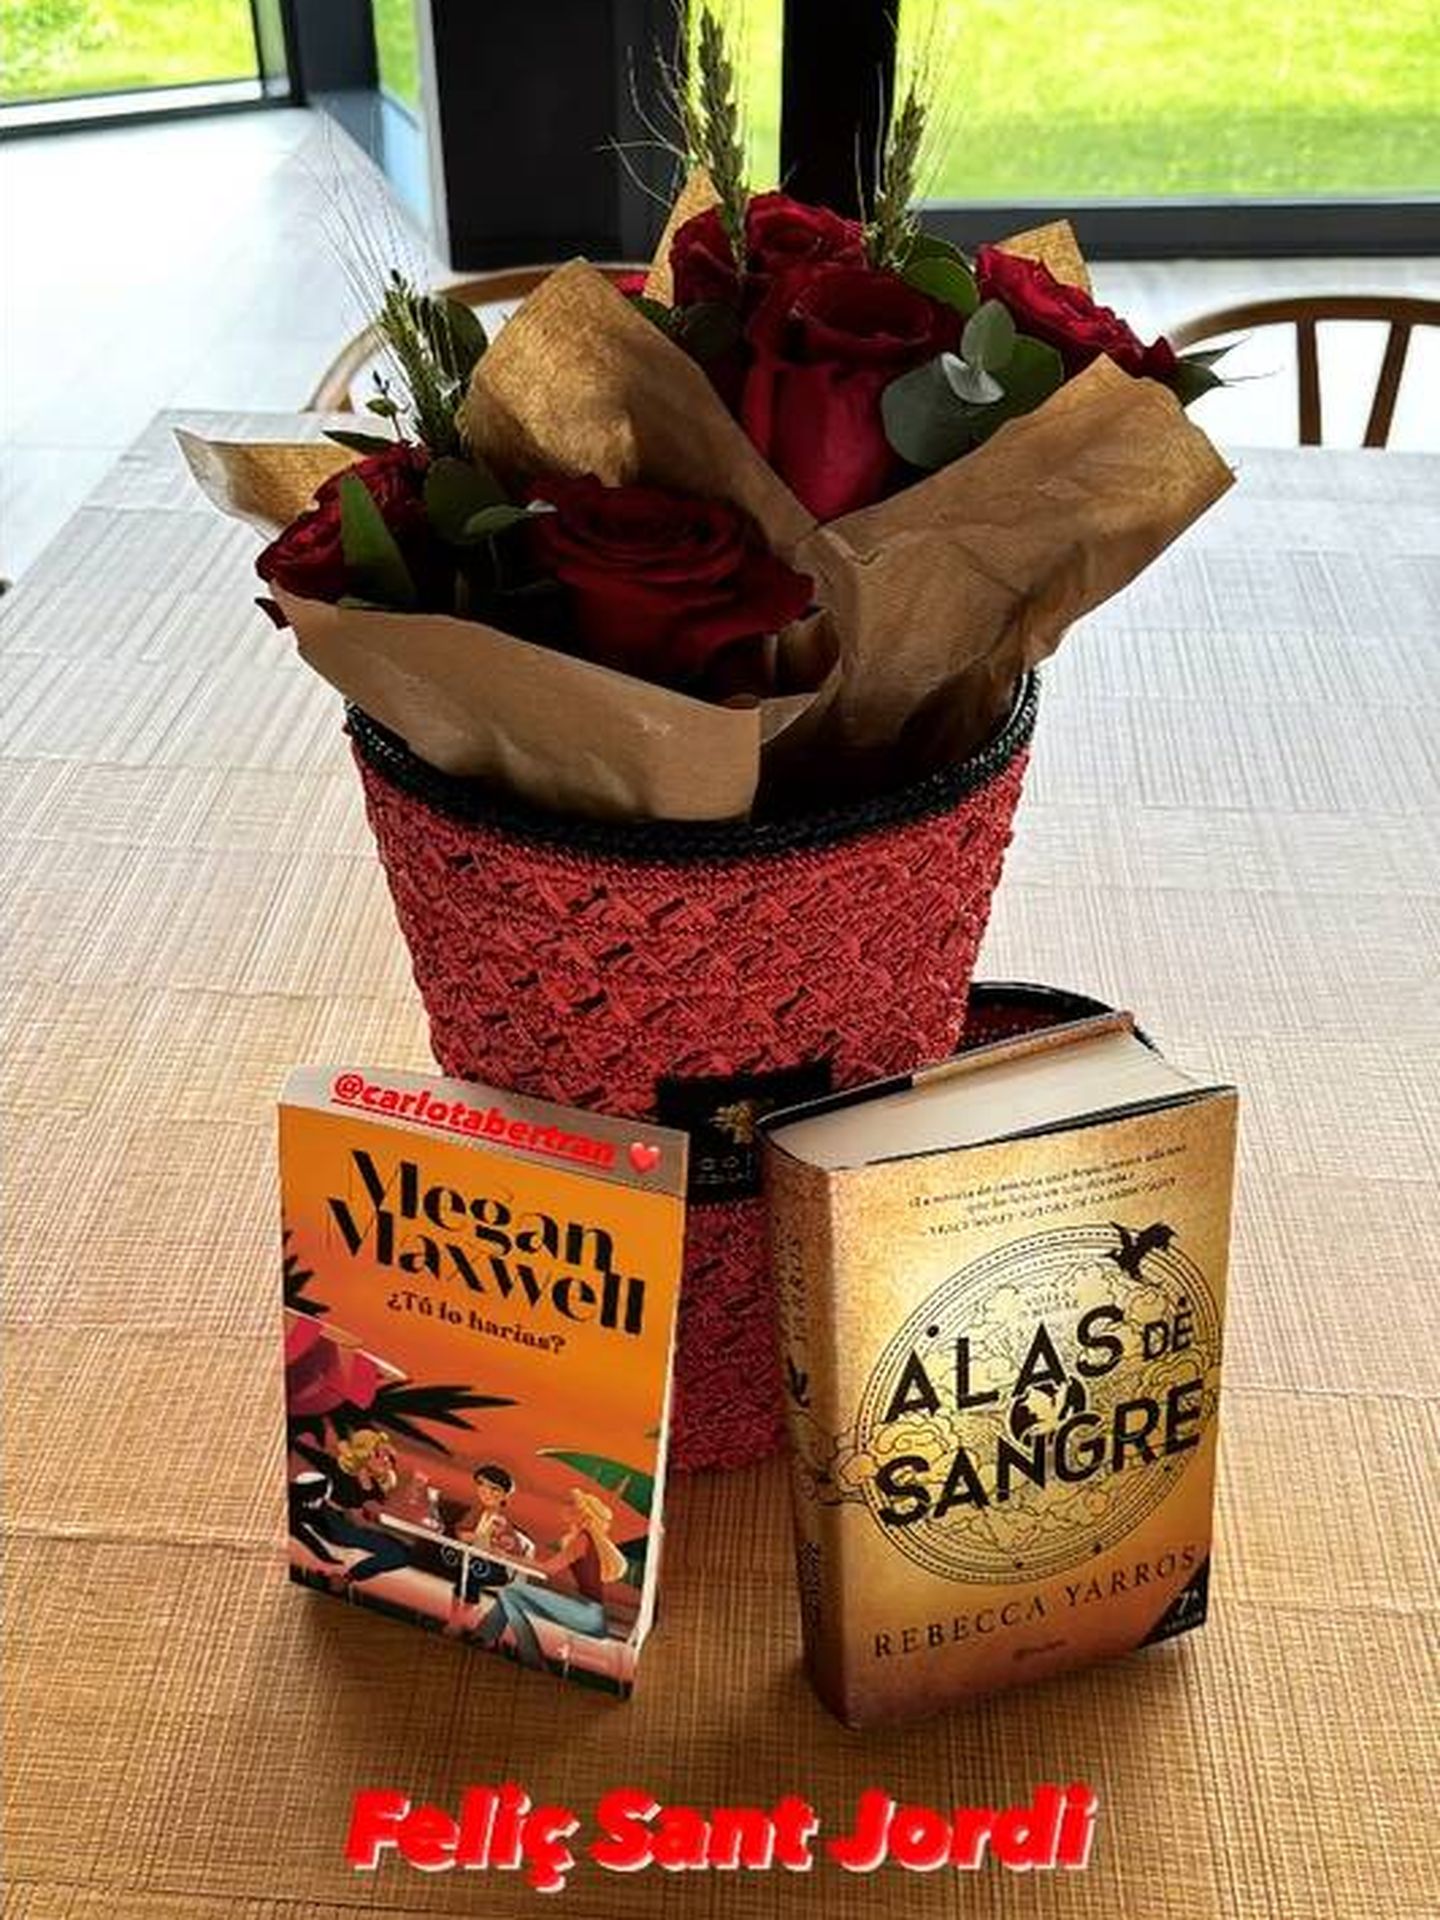 El ramo de rosas que le ha regalado Pol Espargaró a Carlota Bertran Crous. (Instagram/@polespargaro)